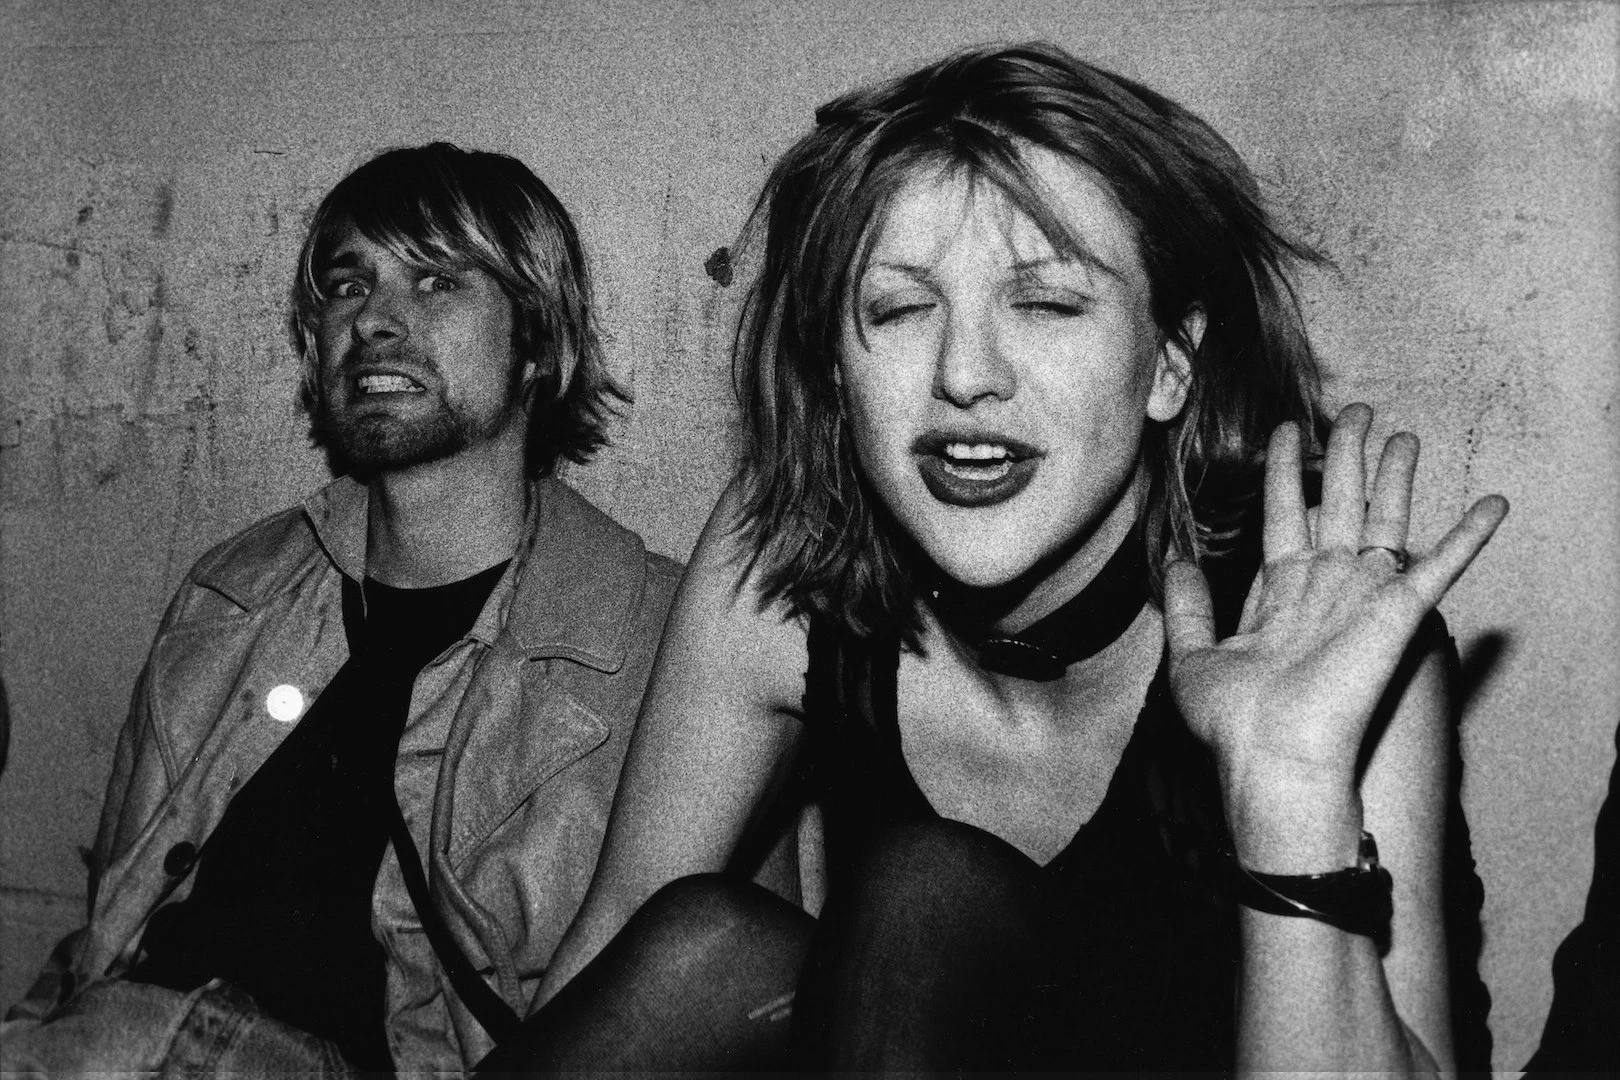 Courtney Love Honors Kurt Cobain With Wedding Anniversary Tribute